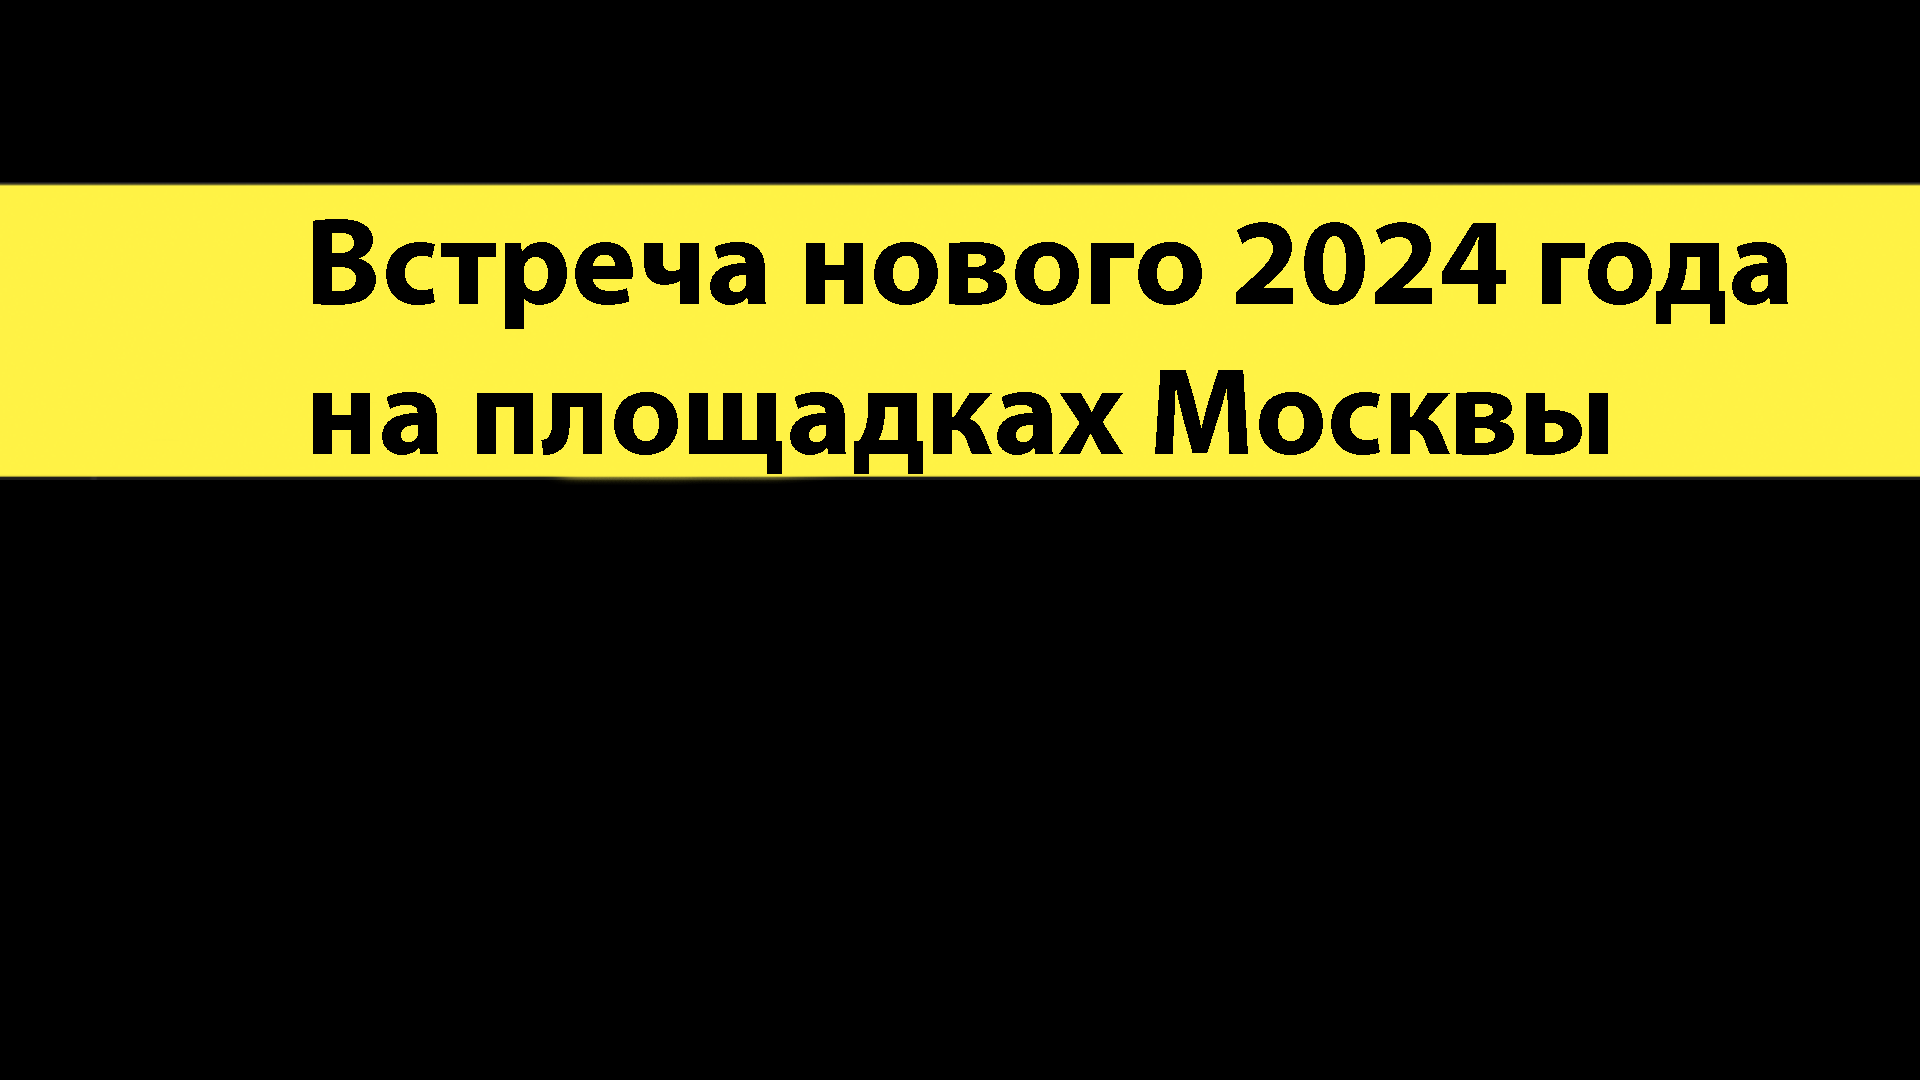 Встреча нового 2024 года на площадках Москвы